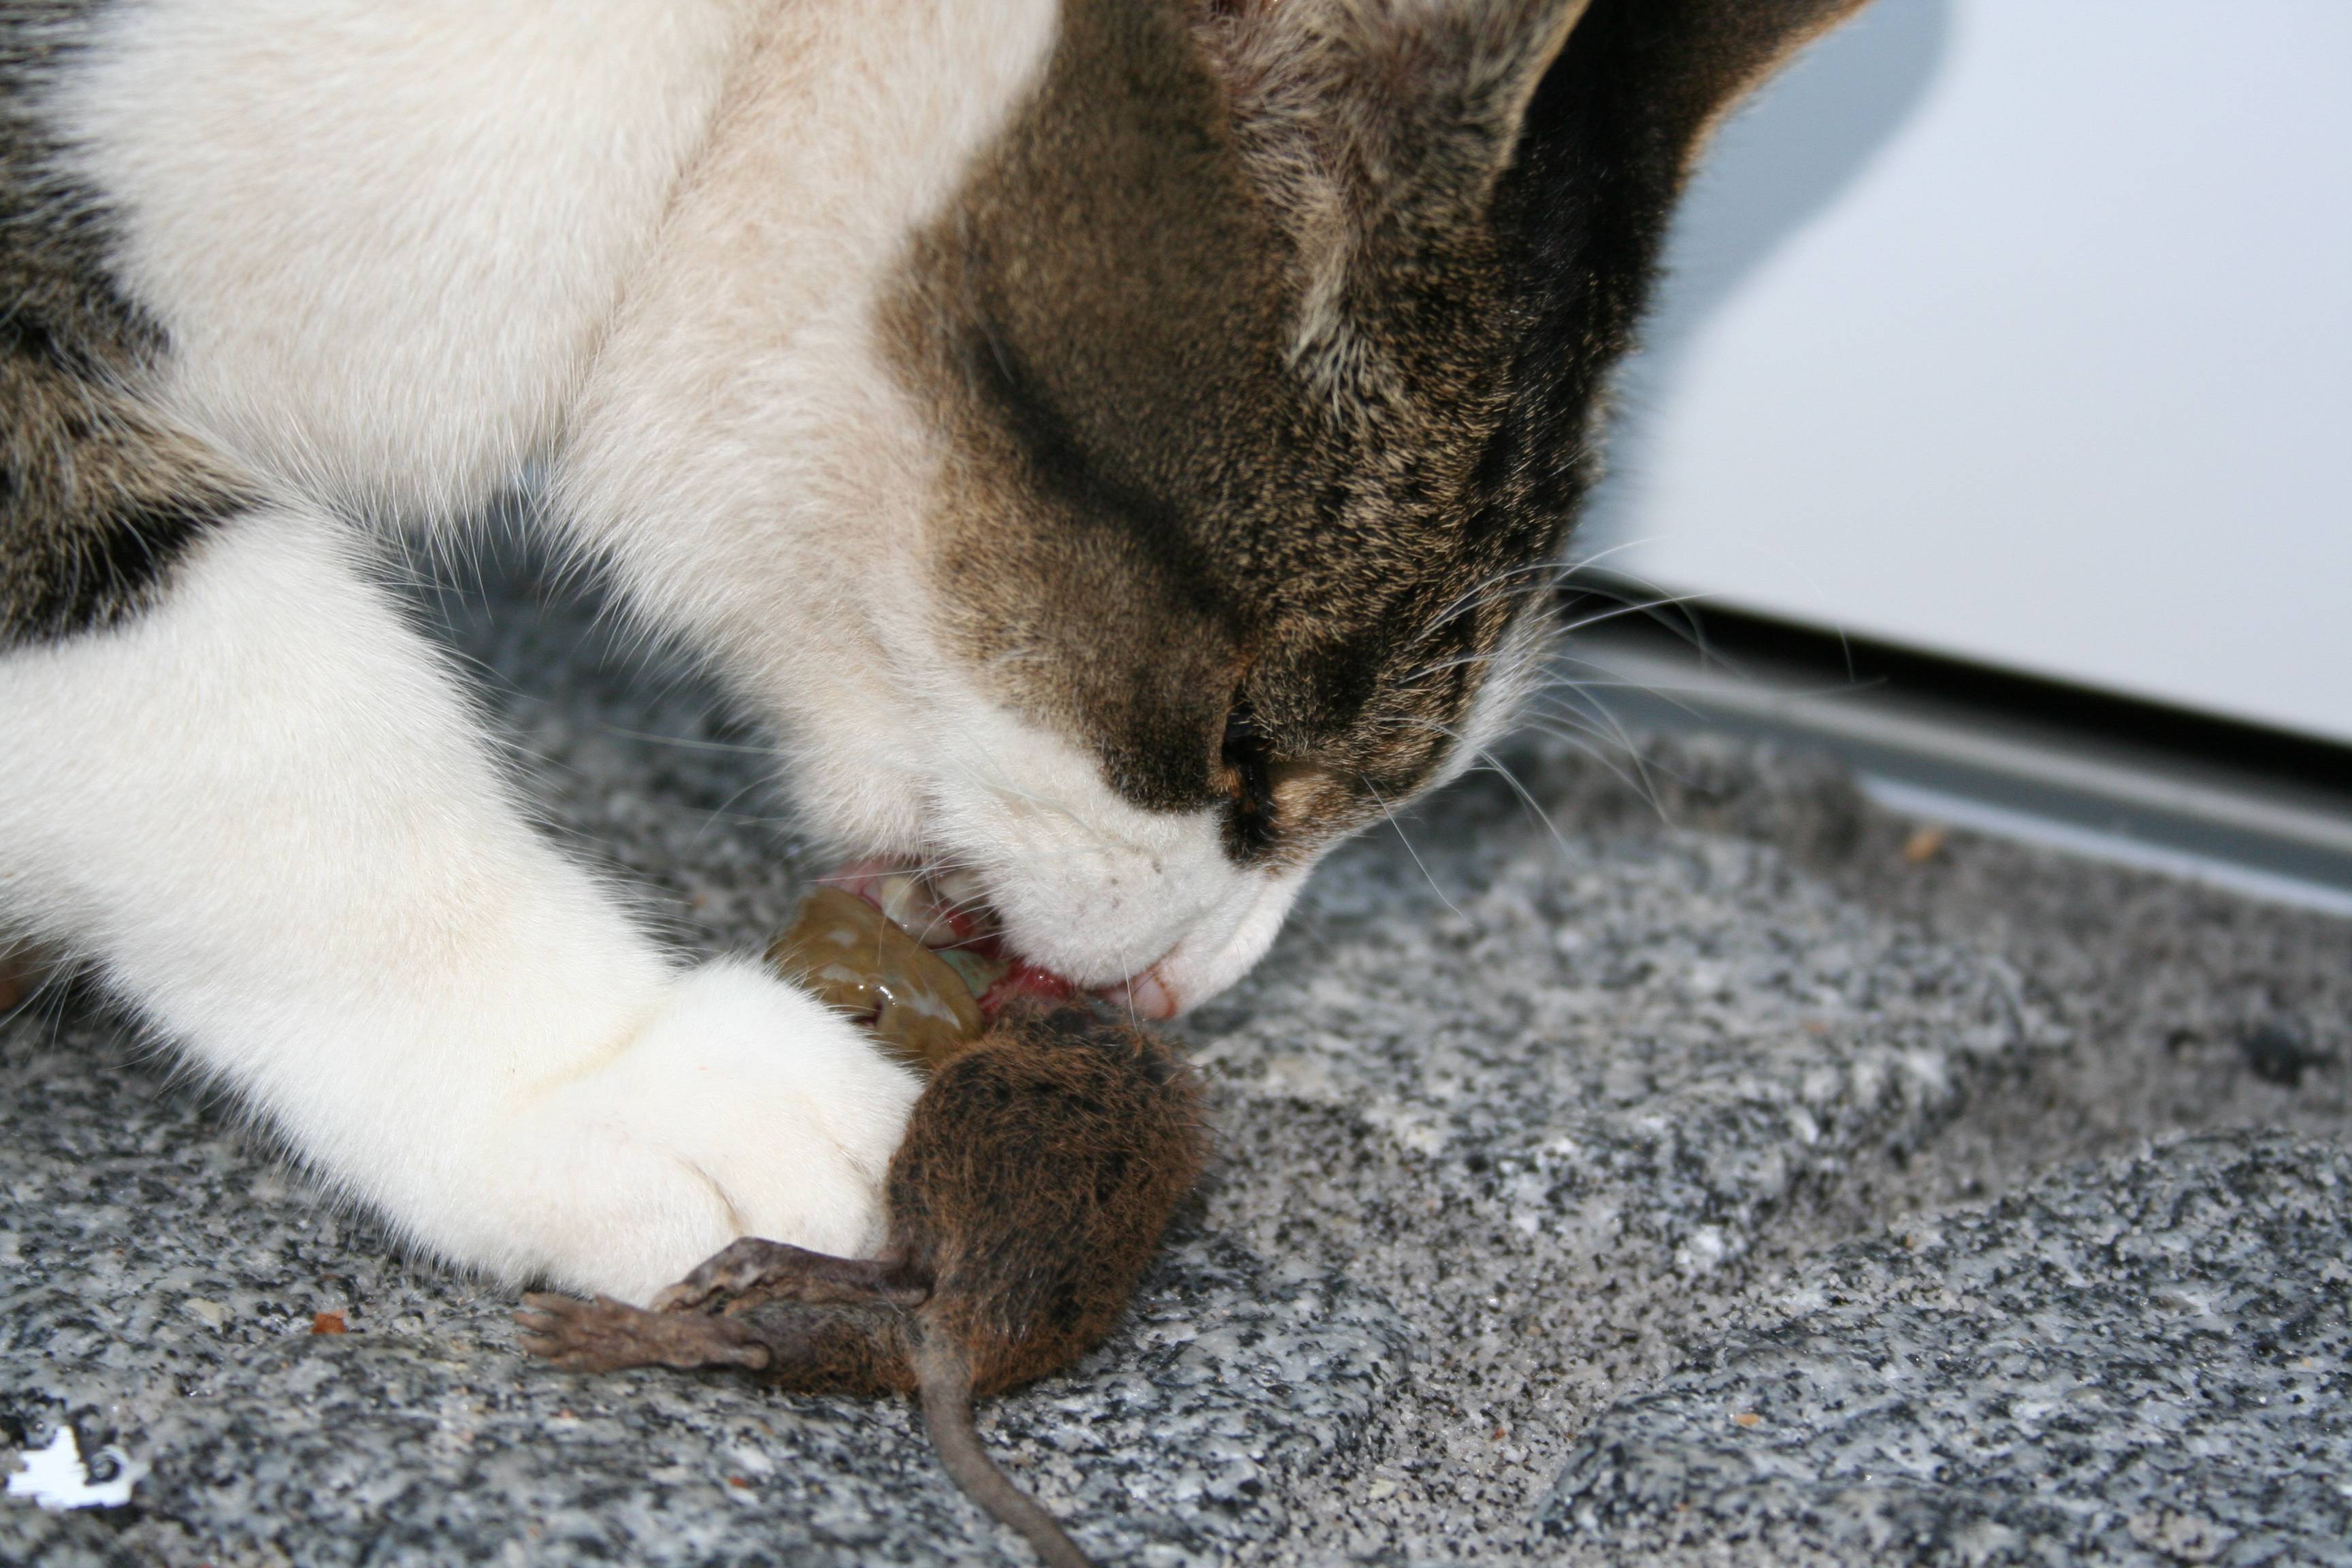 Что делать, если кошка съела отравленную мышь?